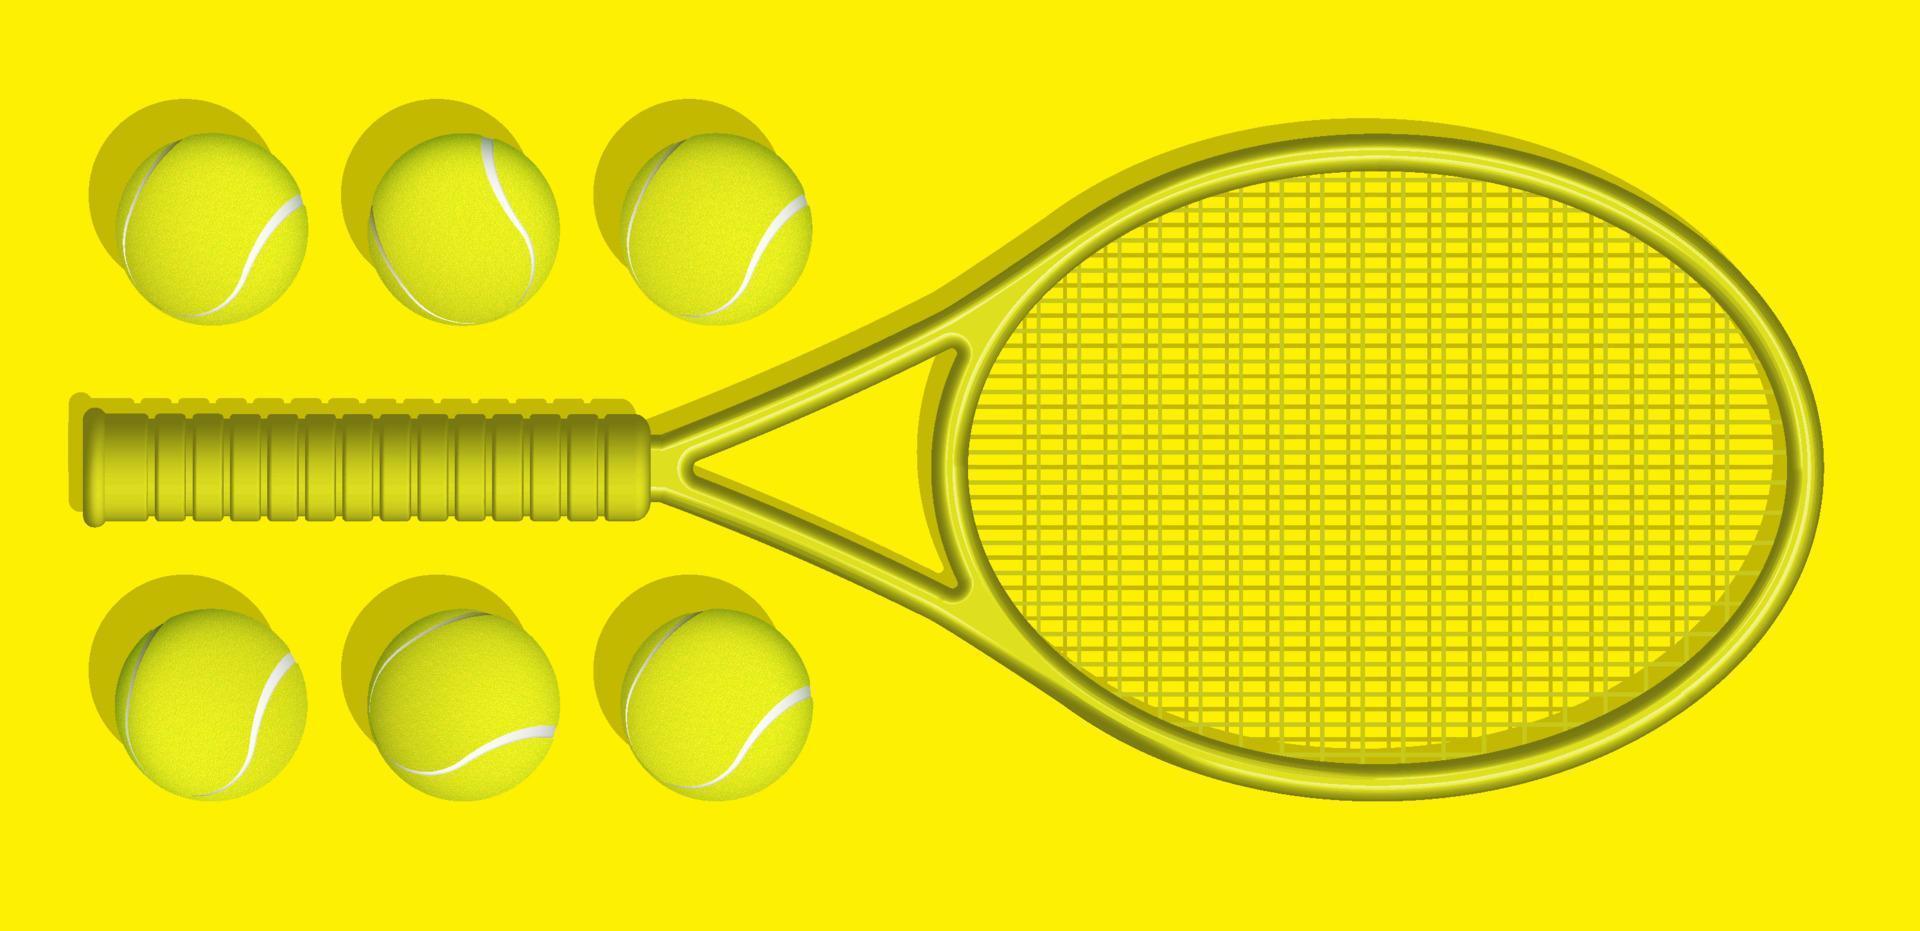 les raquettes et balles de tennis jaunes se trouvent sur fond jaune du court de tennis. matériel de sport et inventaire. vecteur réaliste